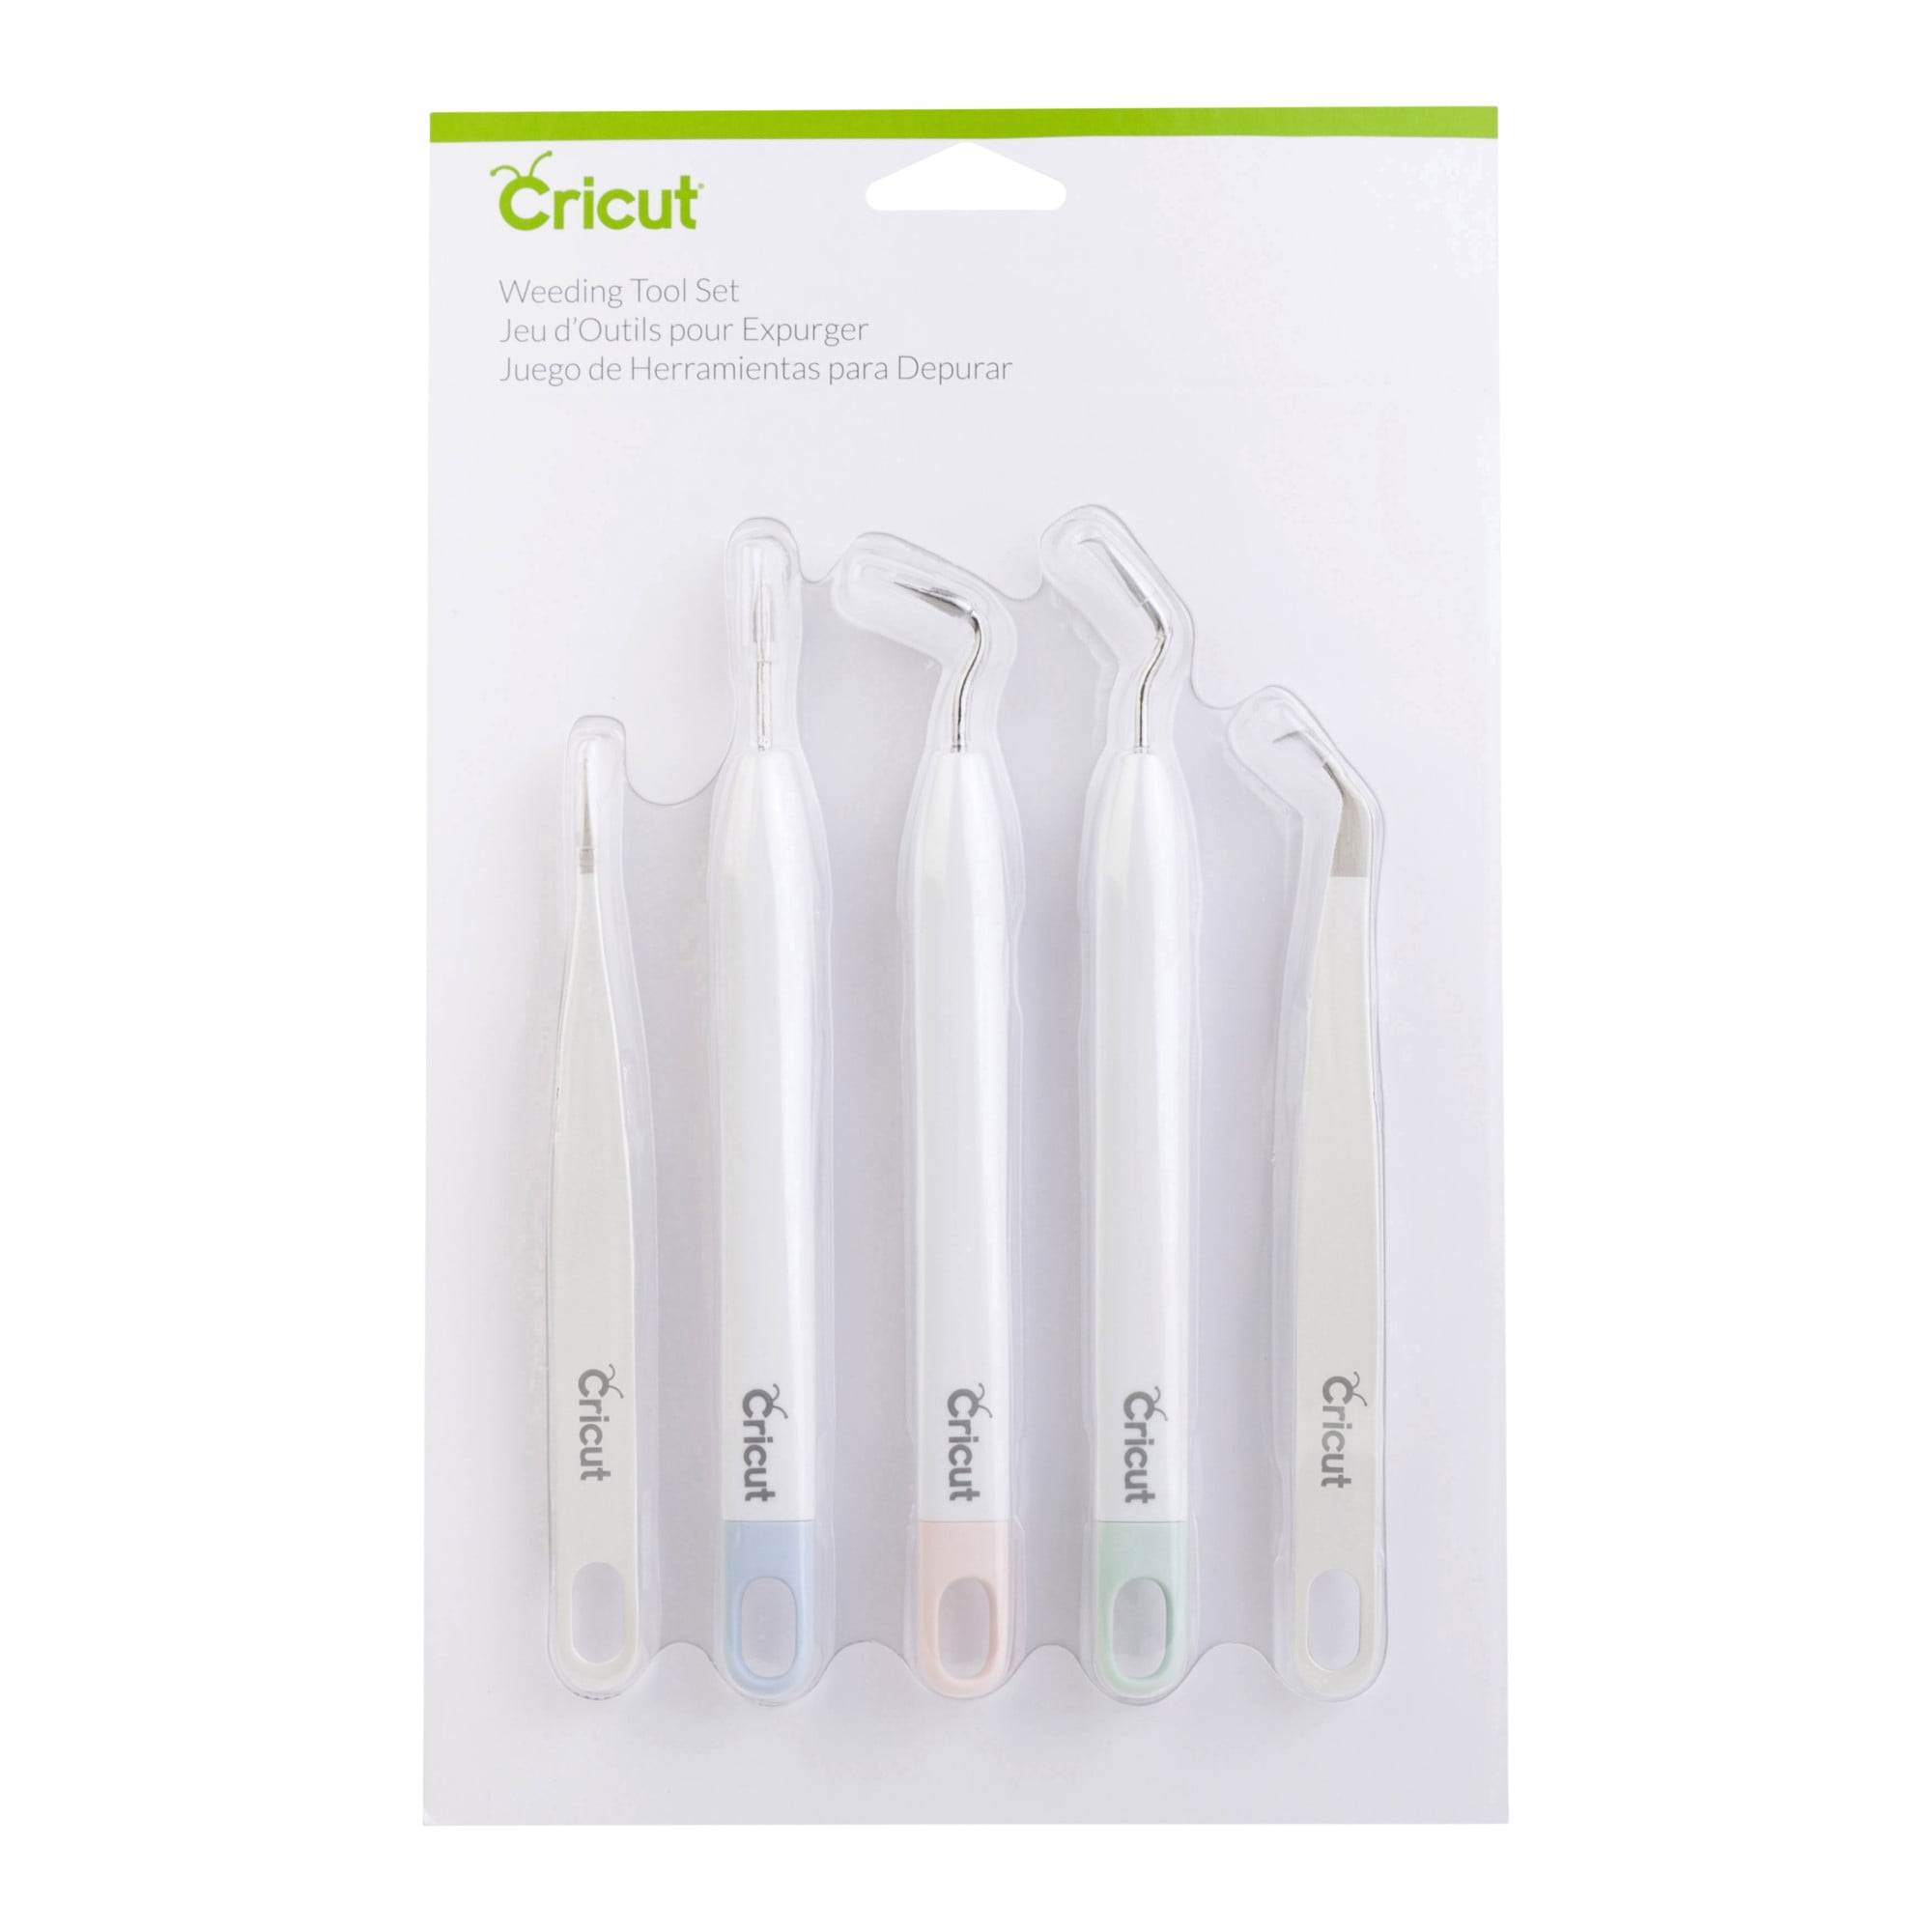 Cricut Basic Weeding Tool Set